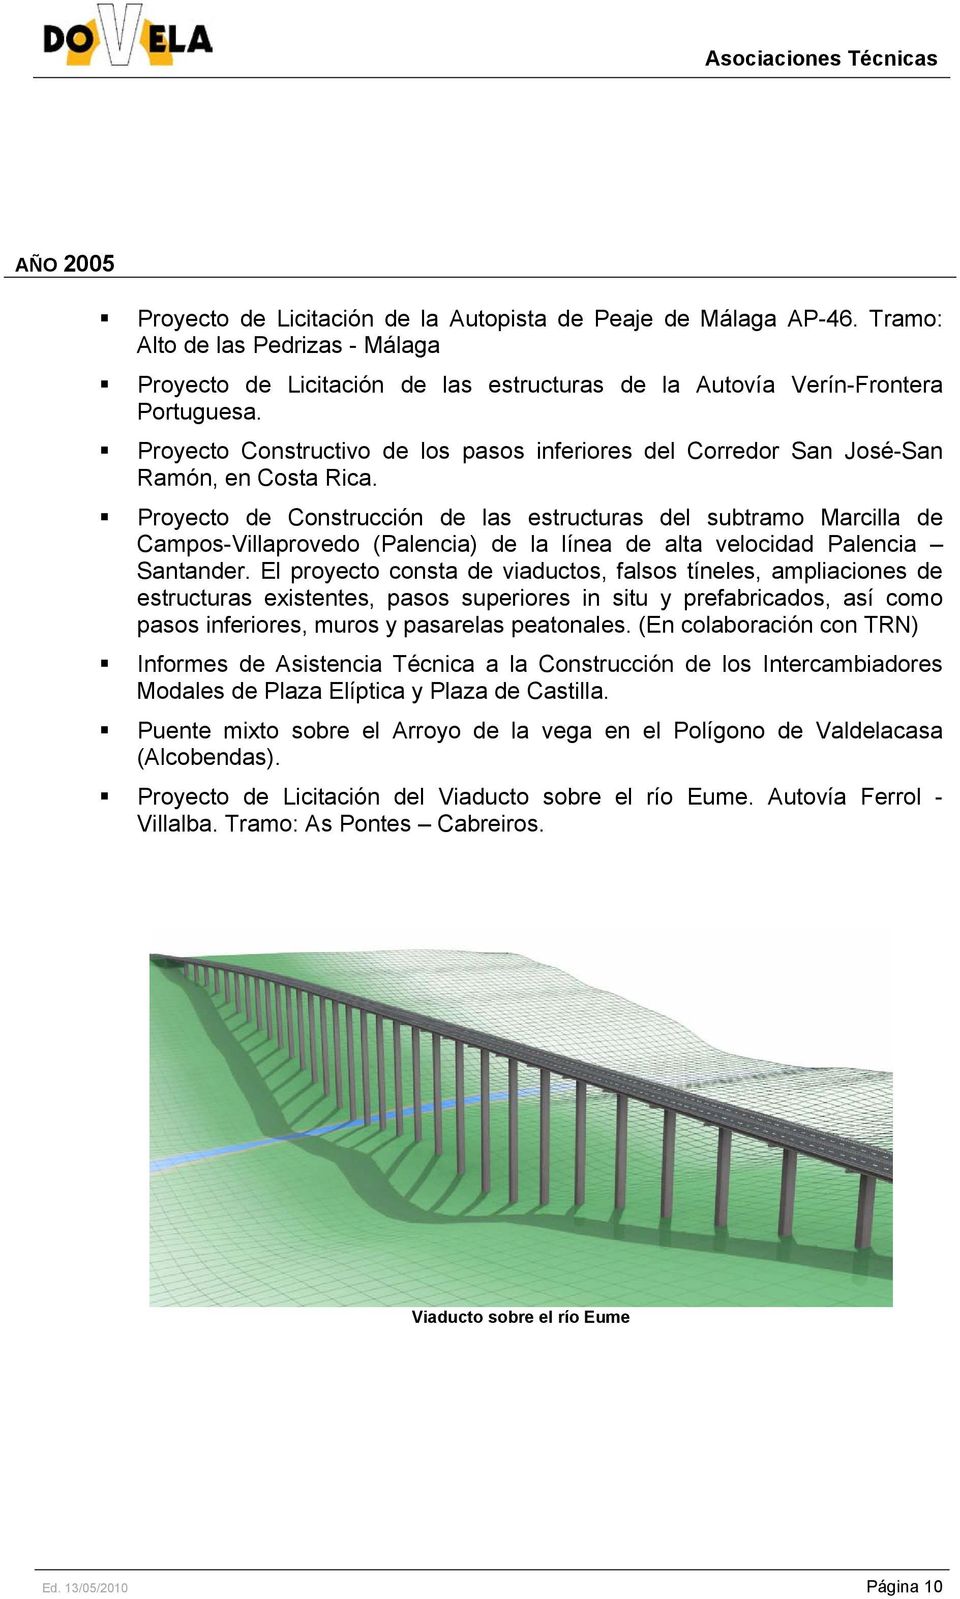 Proyecto de Construcción de las estructuras del subtramo Marcilla de Campos-Villaprovedo (Palencia) de la línea de alta velocidad Palencia Santander.